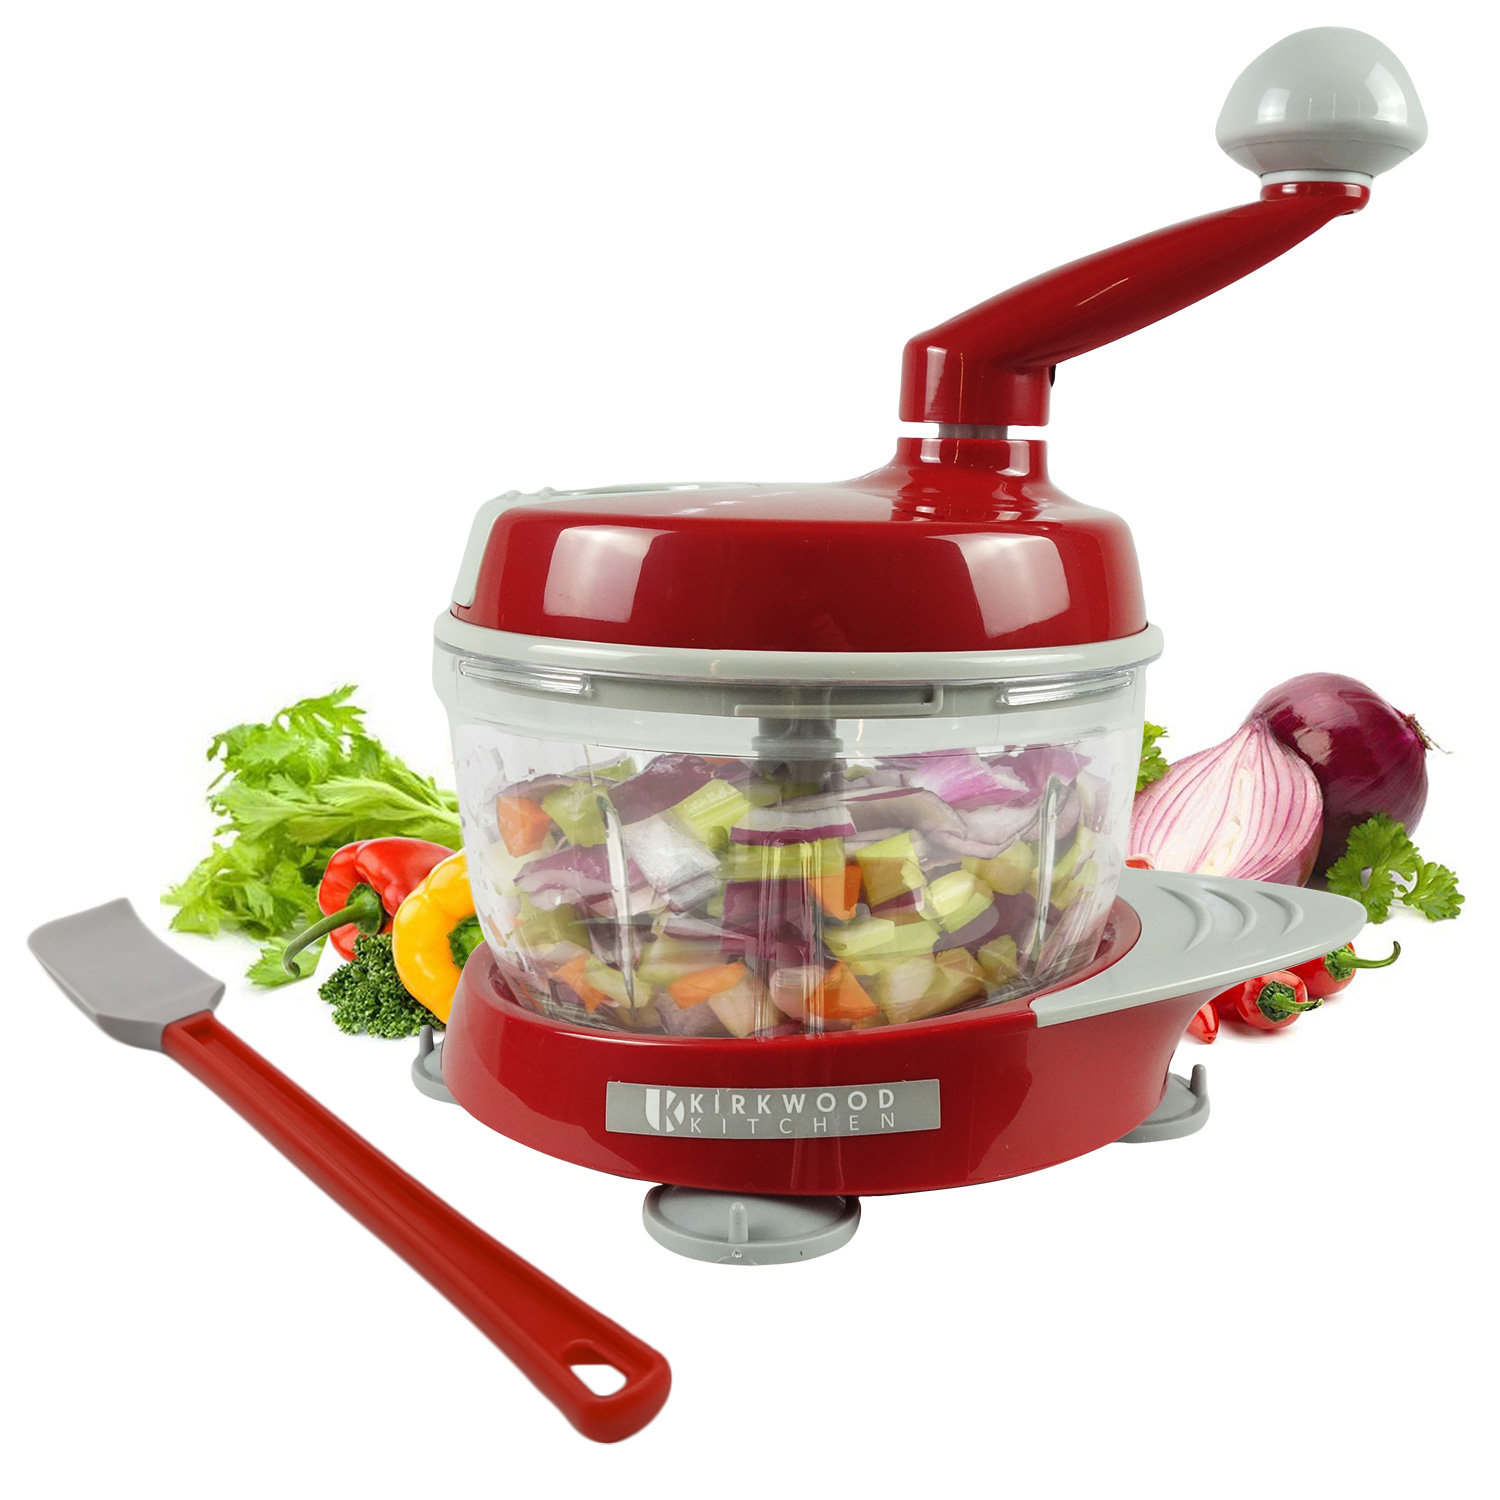 https://assets.wfcdn.com/im/33208891/compr-r85/2175/217540136/multi-function-manual-food-processor-kitchen-meat-grinder-vegetable-chopper-slicer-spinner-dicer-for-fruits-herbs-lettuce-salad-foods.jpg